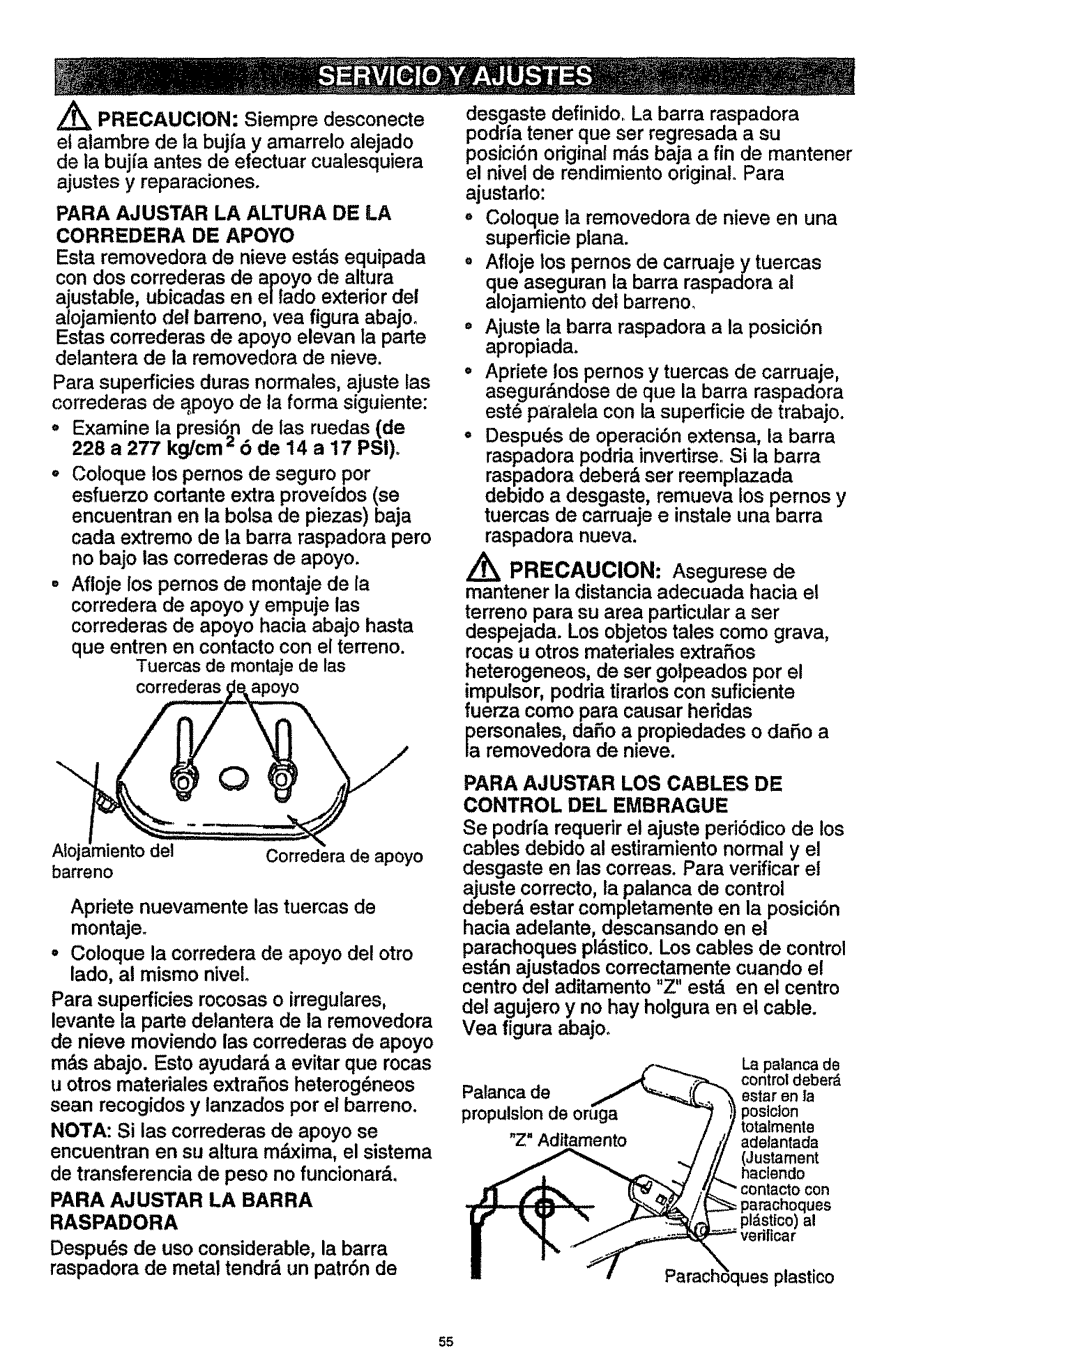 Craftsman 536.886141 manual Para Ajustar LA Altura DE LA Corredera DE Apoyo, Tuercas de montajede las correderas apoyo 